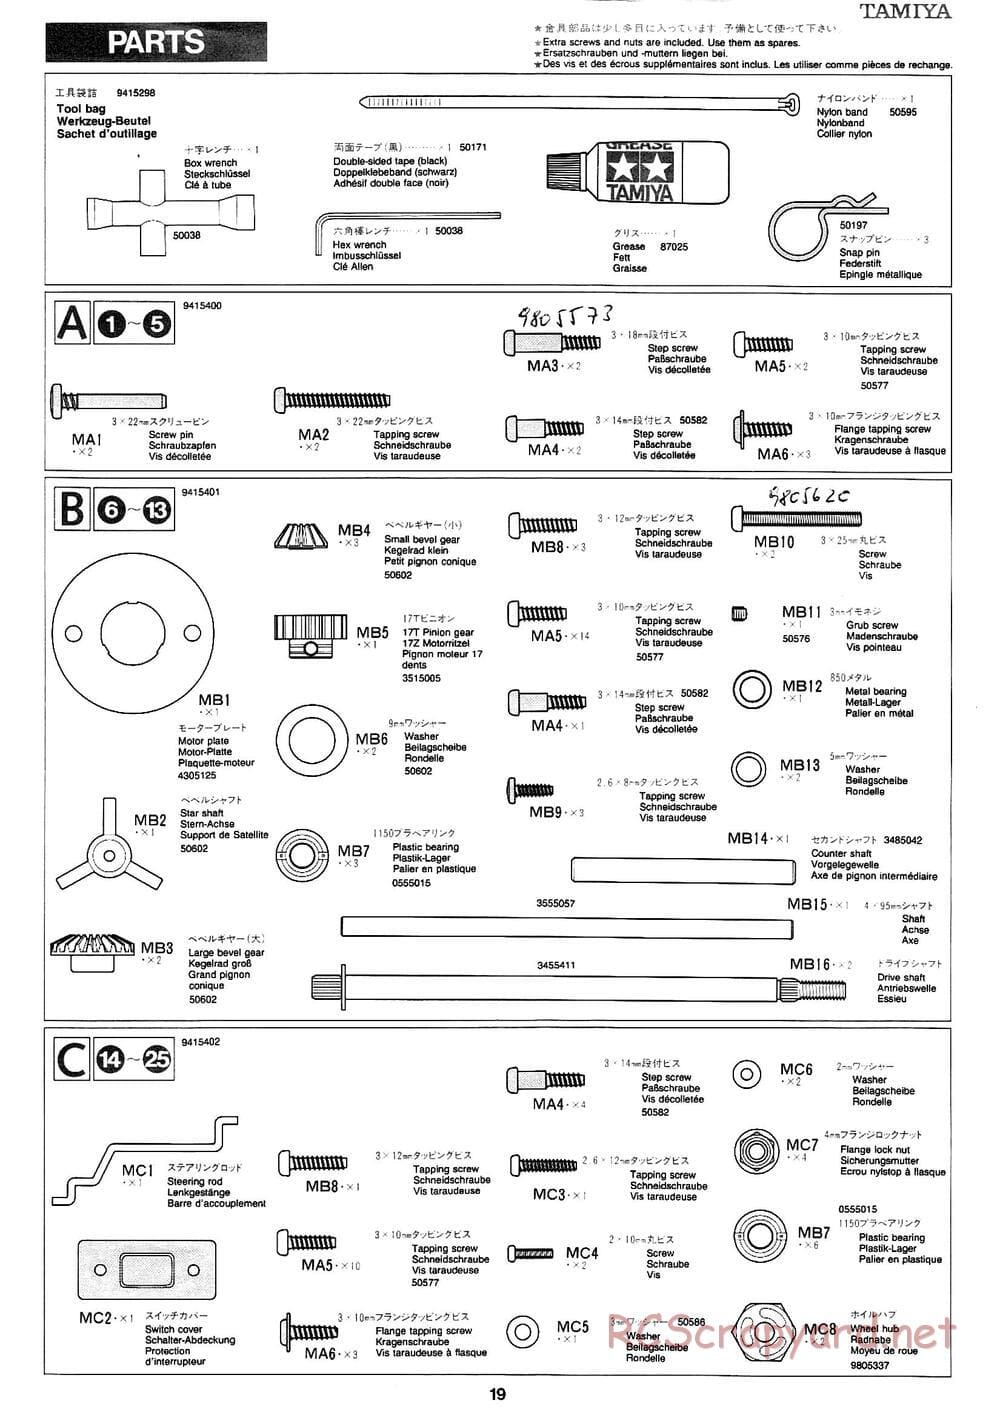 Tamiya - Mad Bull Chassis - Manual - Page 19